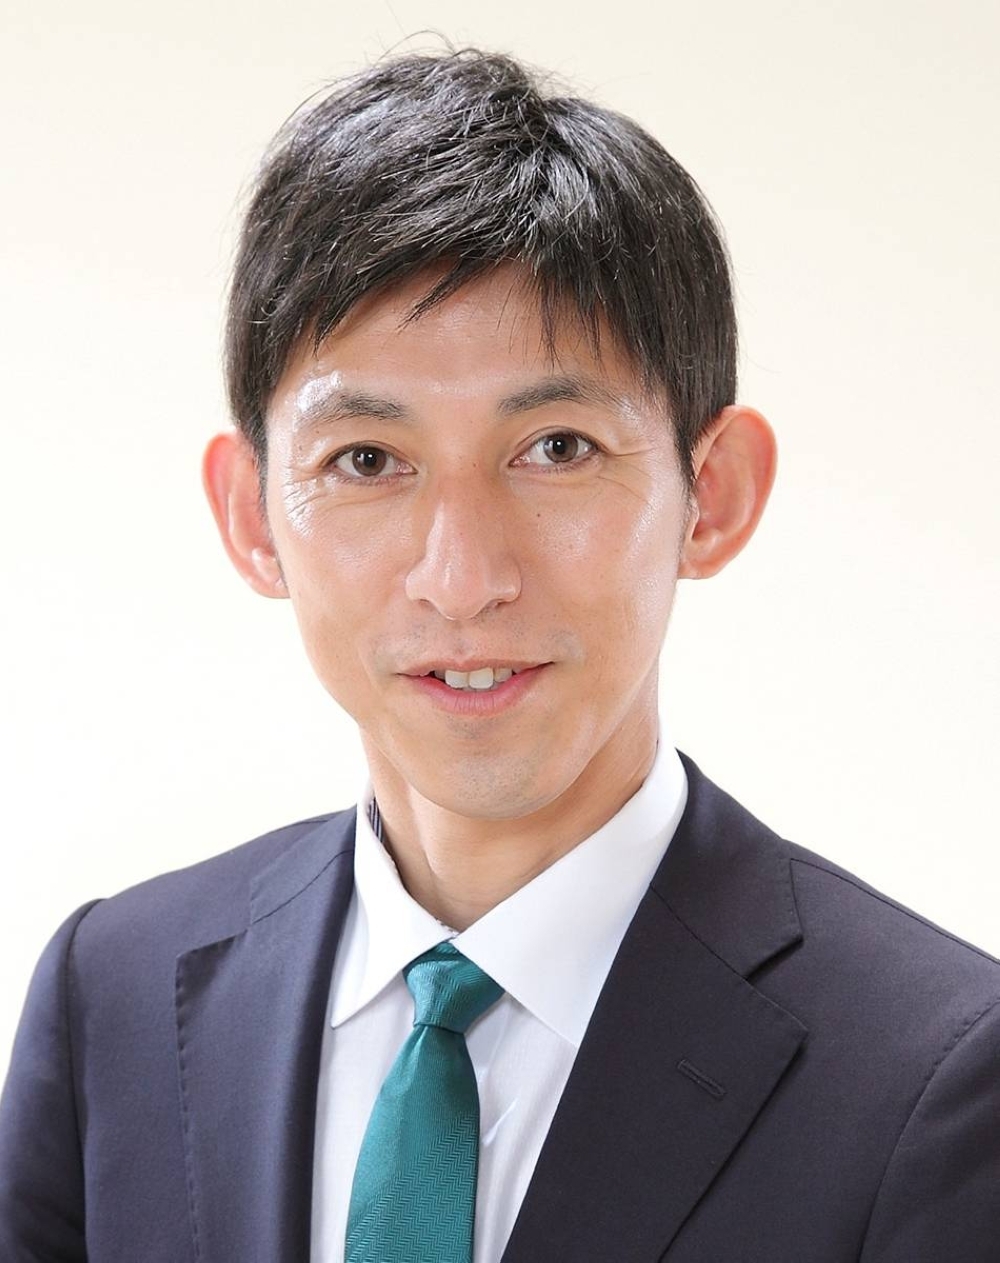 Tomoya Yamamoto, mayor of Mutsu